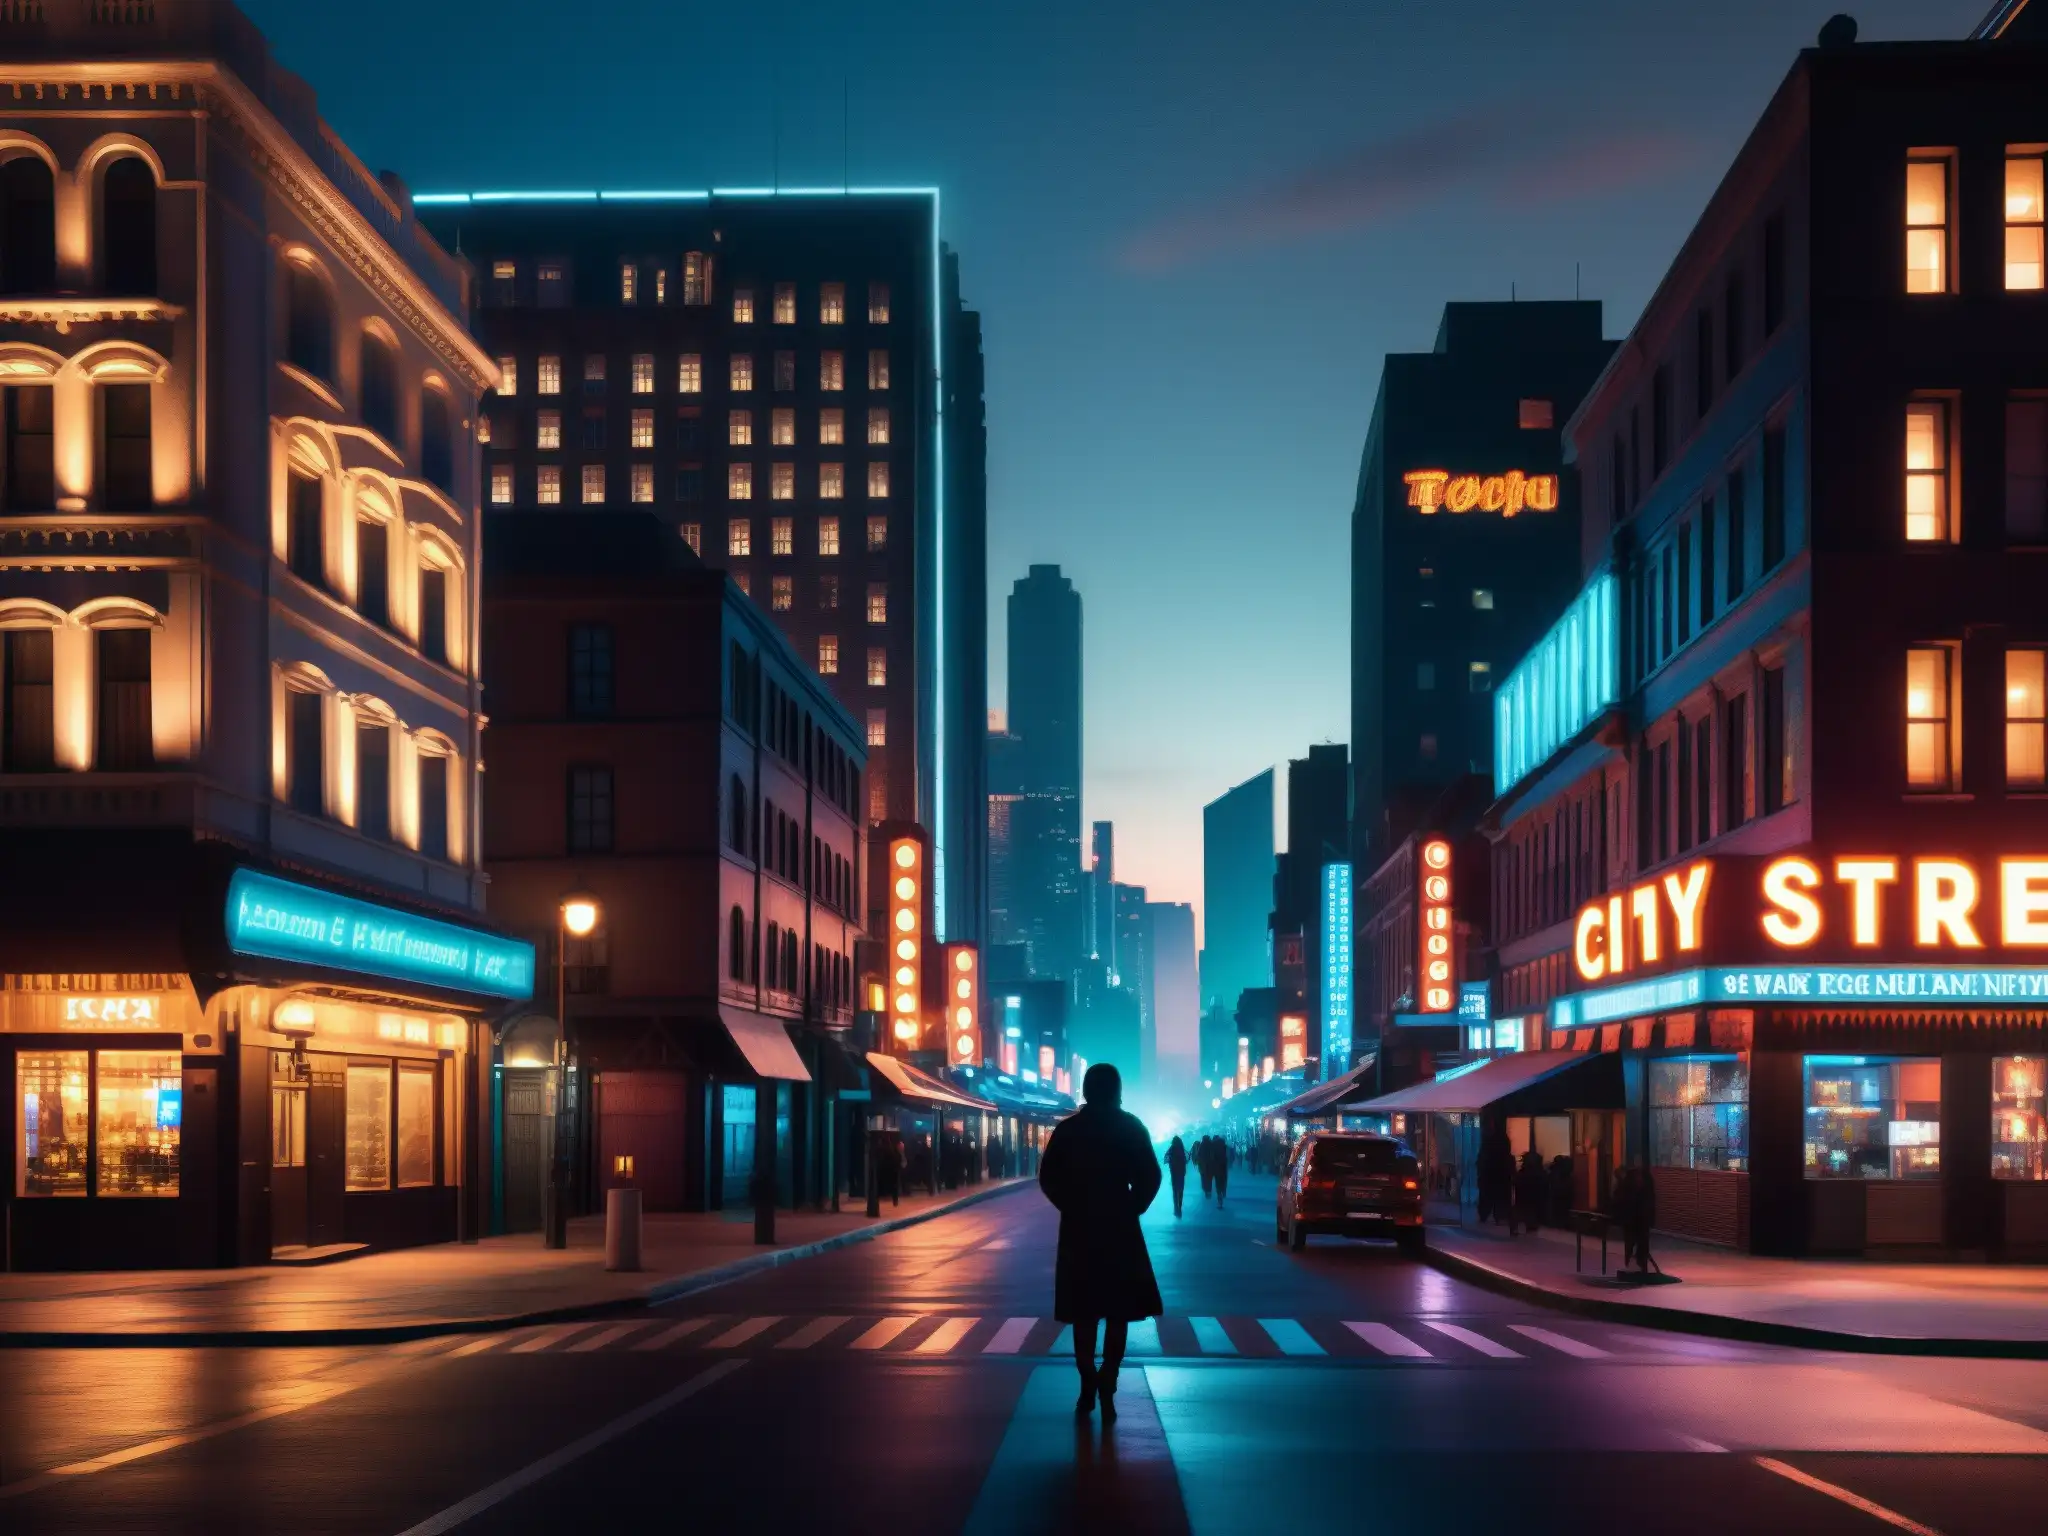 Imagen nocturna de ciudad con aura misteriosa y personaje en sombras, evocando análisis psicológico de leyendas urbanas